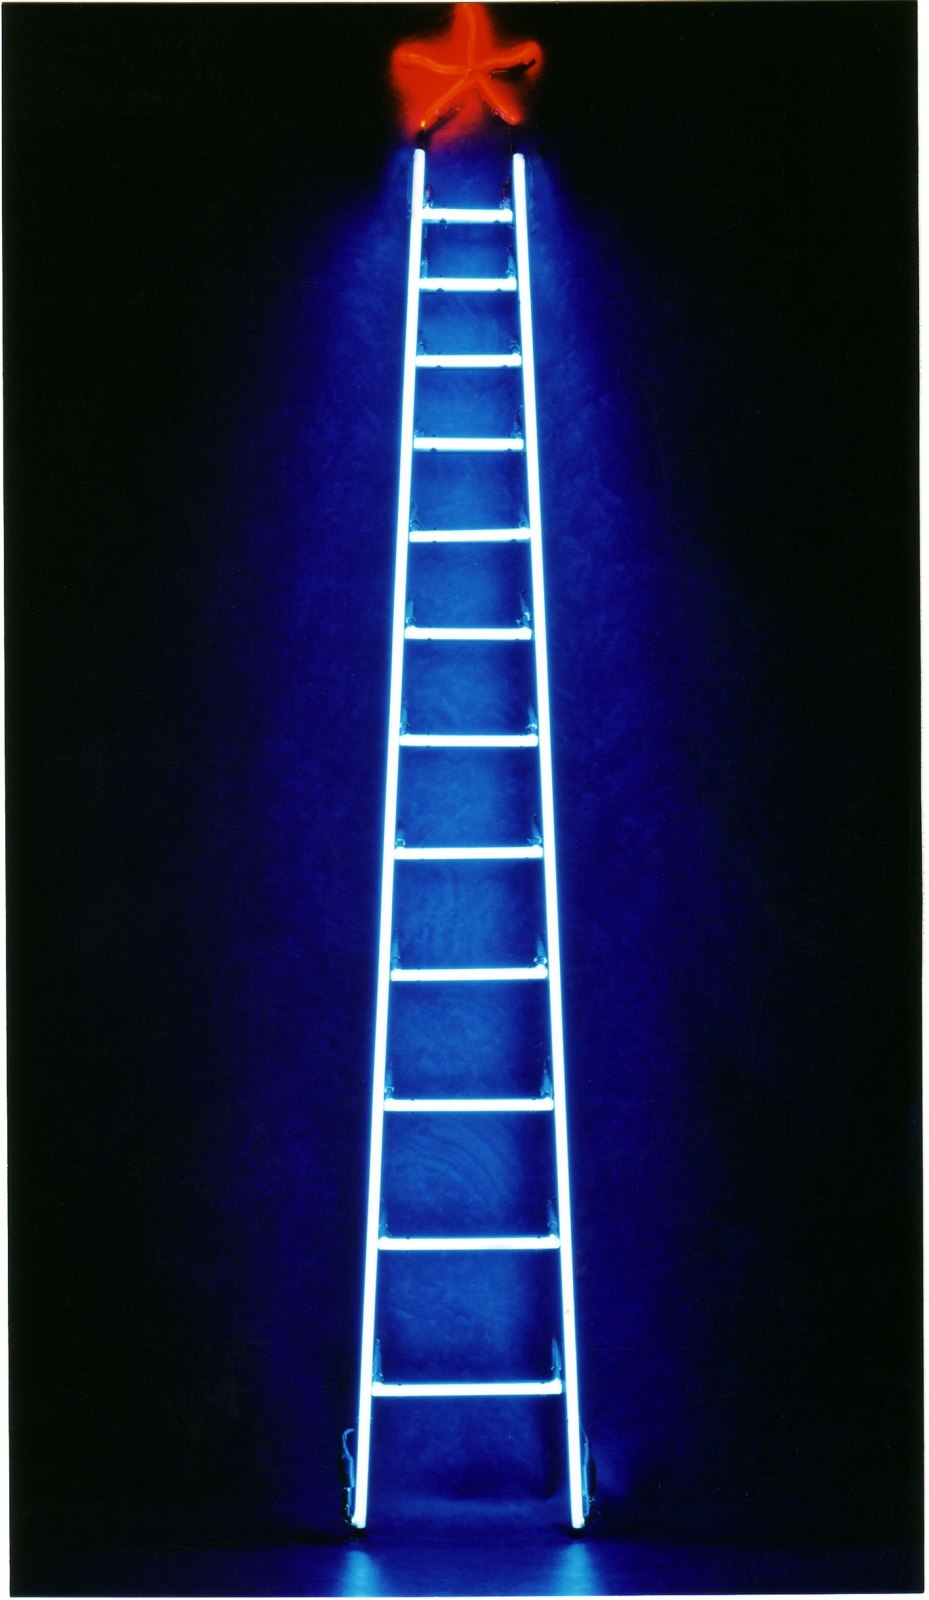 SCALINATELLA . 1999 - Tubi al neon su struttura in ferro, cm.230 x 30
Collezione Maristella Buonsante, Bari